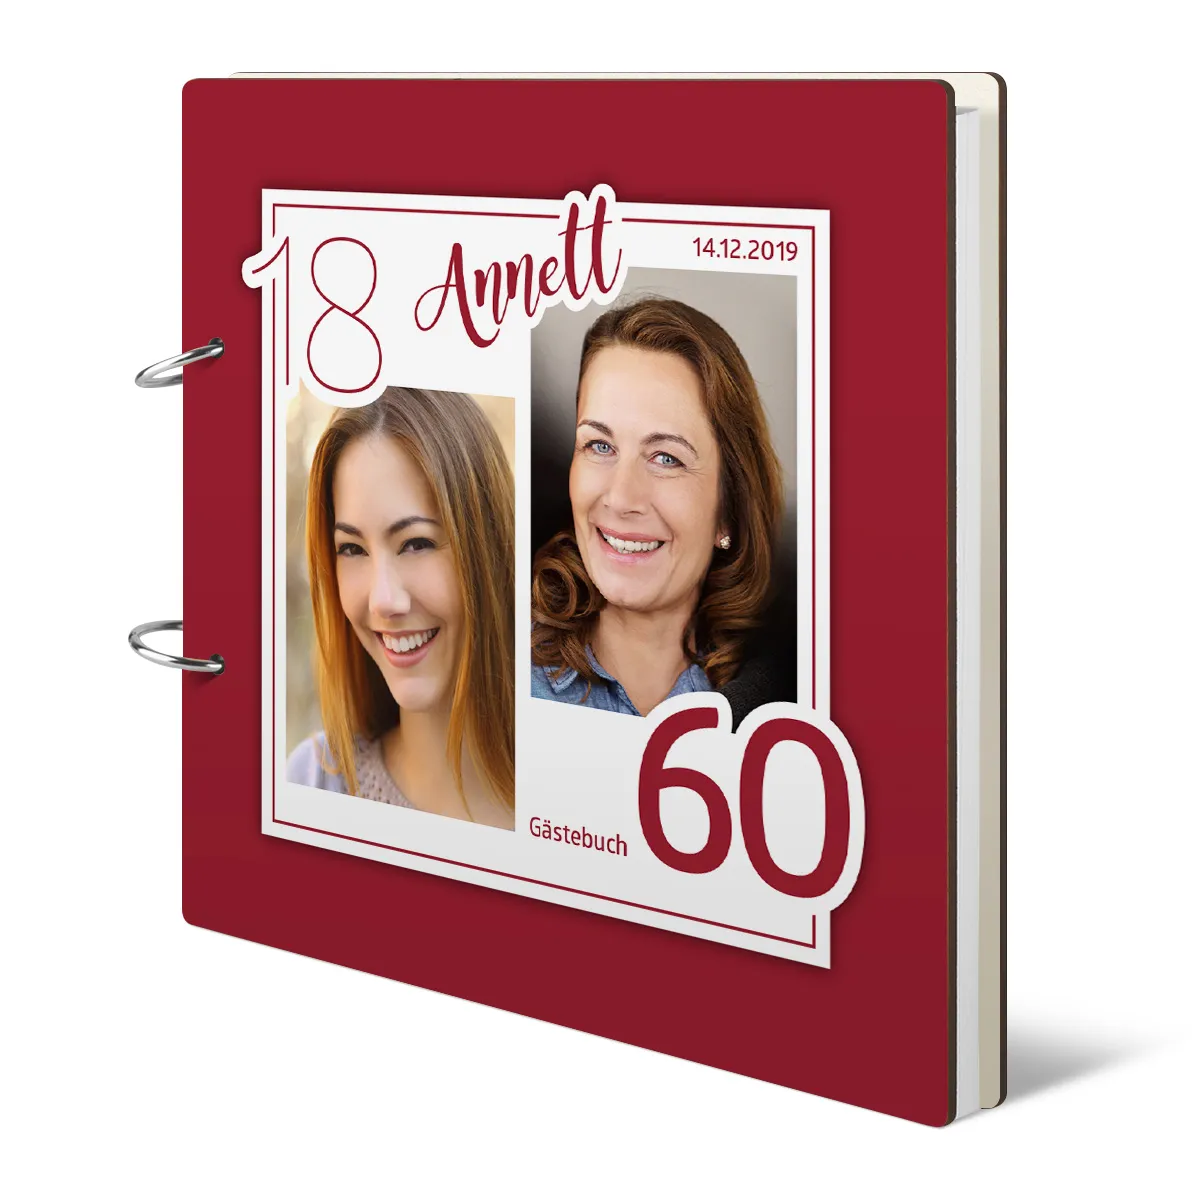 Personalisiertes Geburtstag Gästebuch 60 Jahre - Altersbild